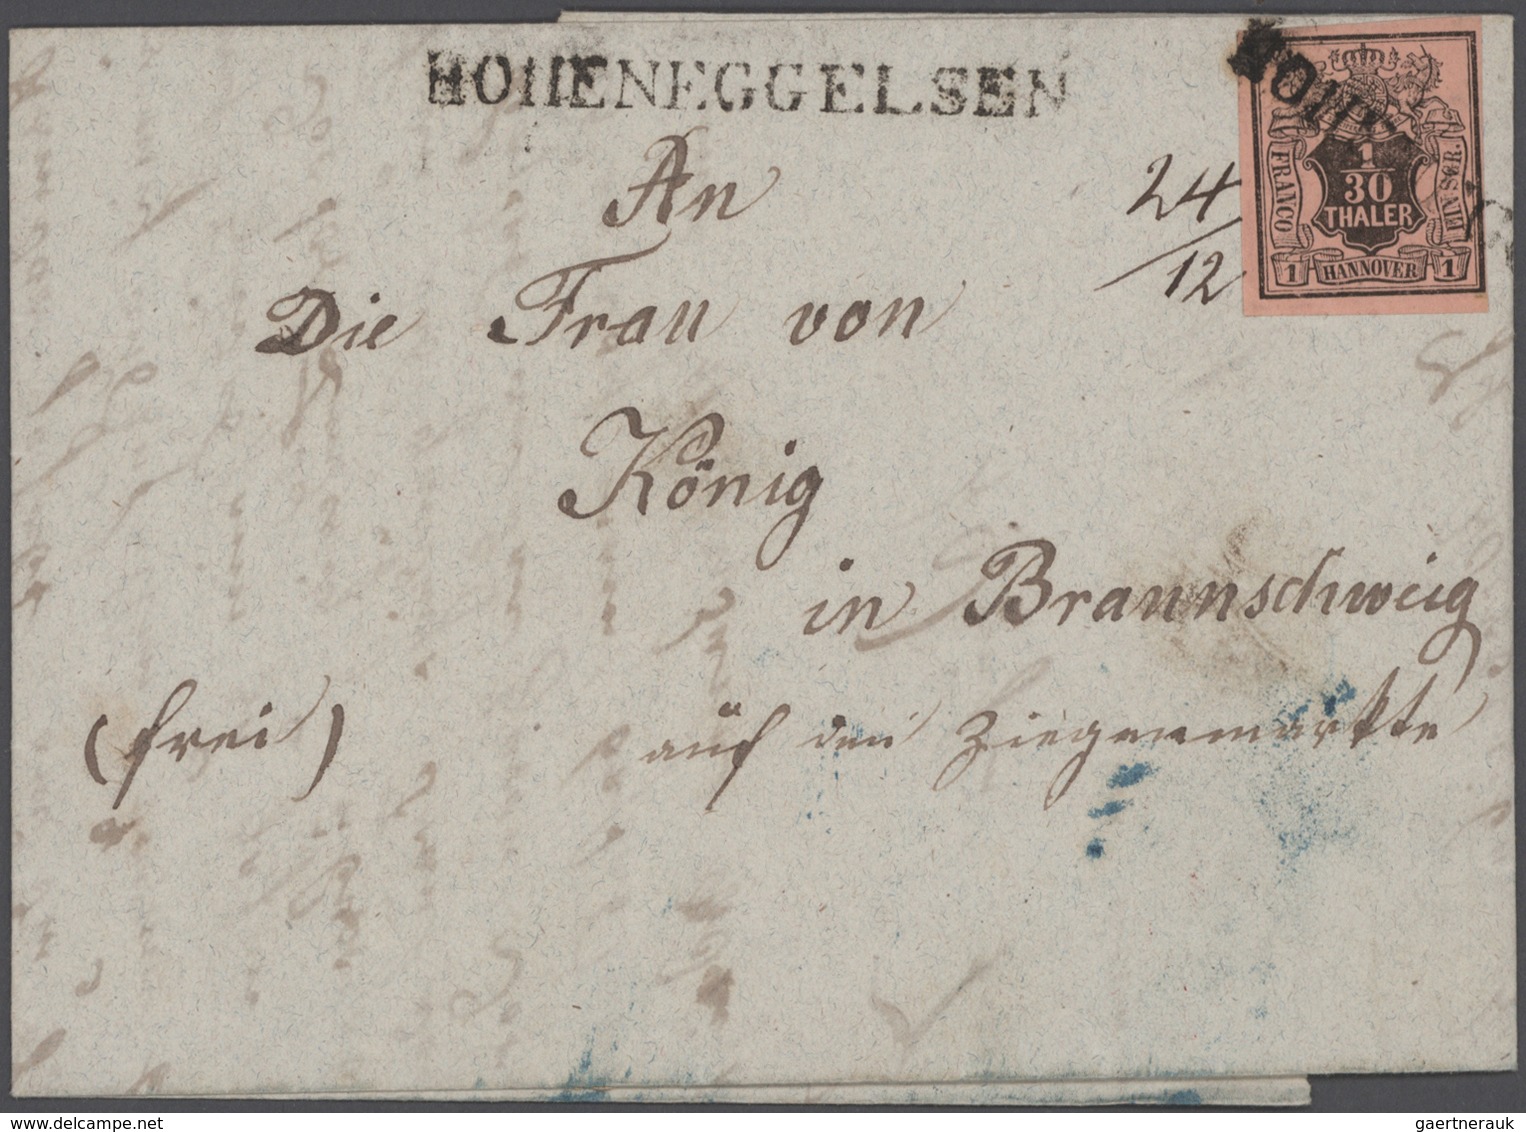 Heimat: Niedersachsen: 1675/1930 (ca.), Braunschweig/Hannover/Hildesheim/Hoheneggelsen, vielseitiger